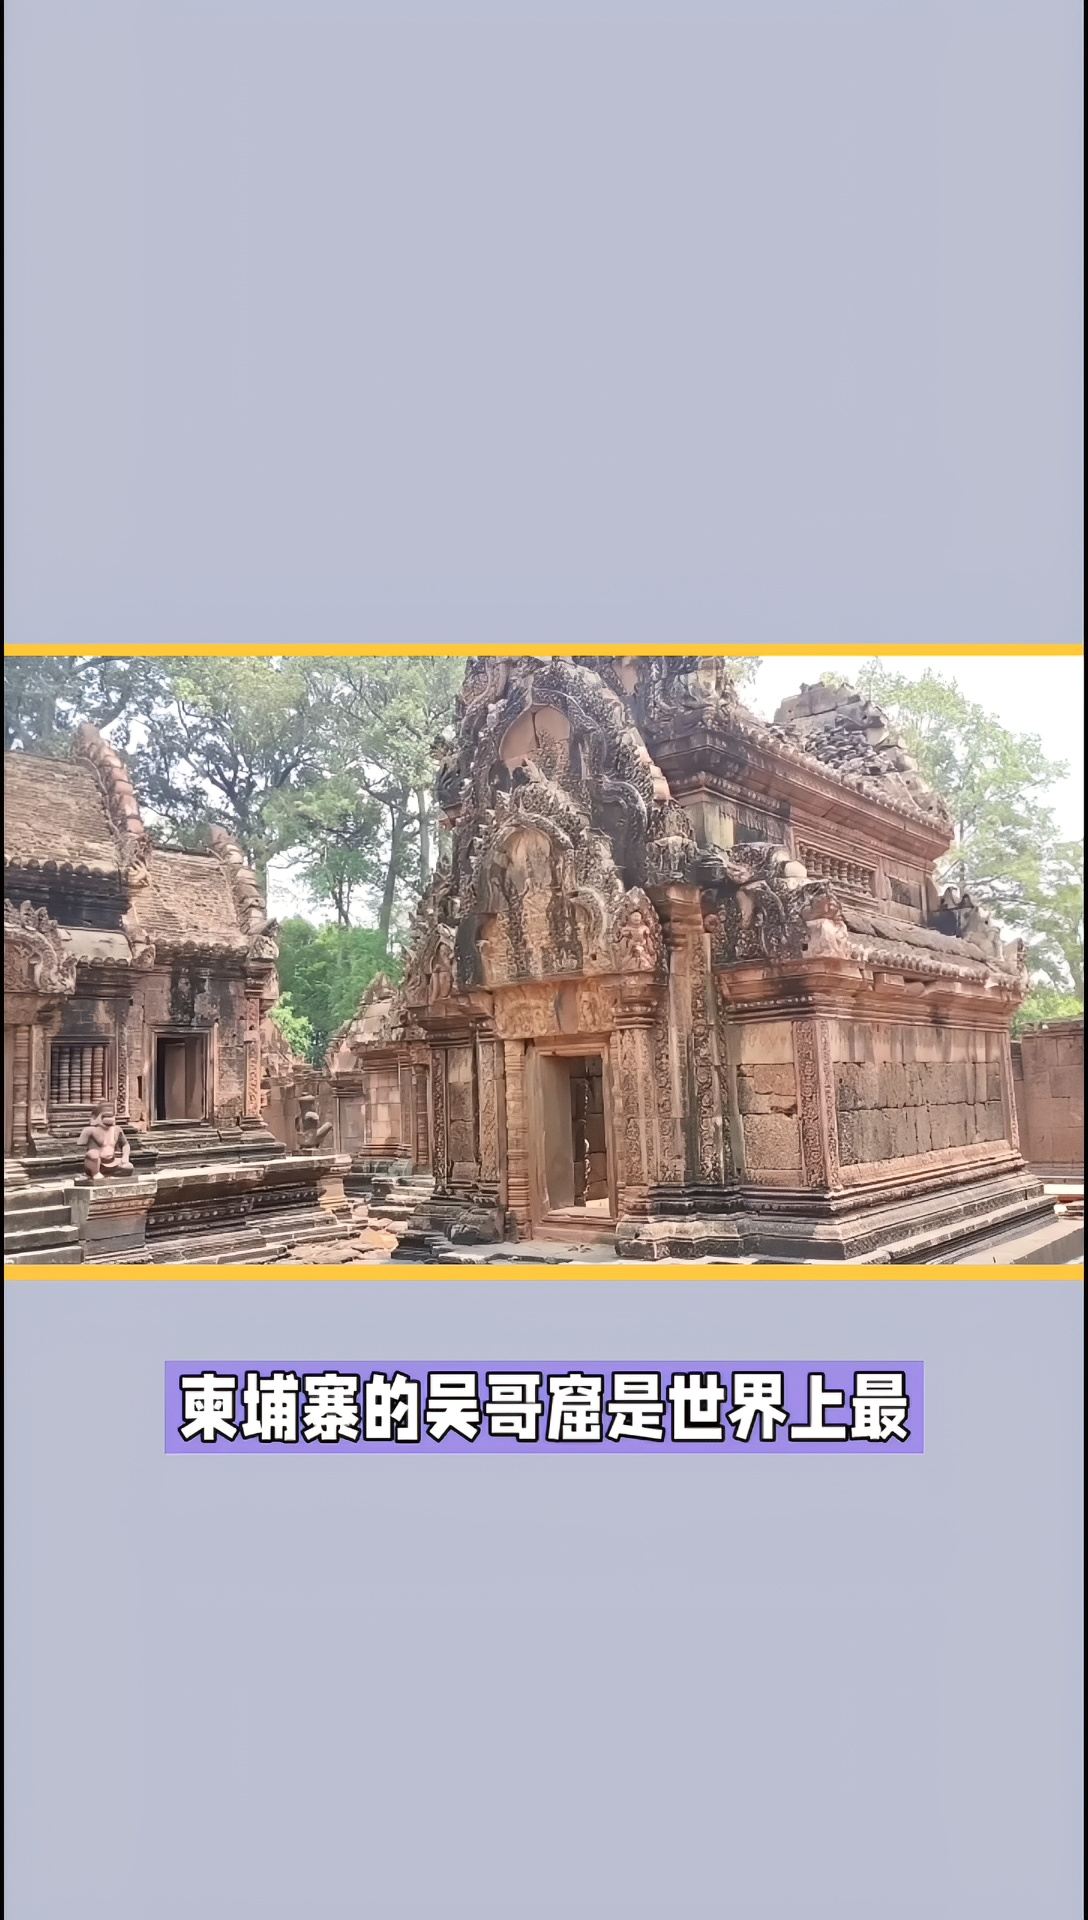 柬埔寨的吴哥窟是世界上最壮丽的遗址之一，被列为世界遗产。